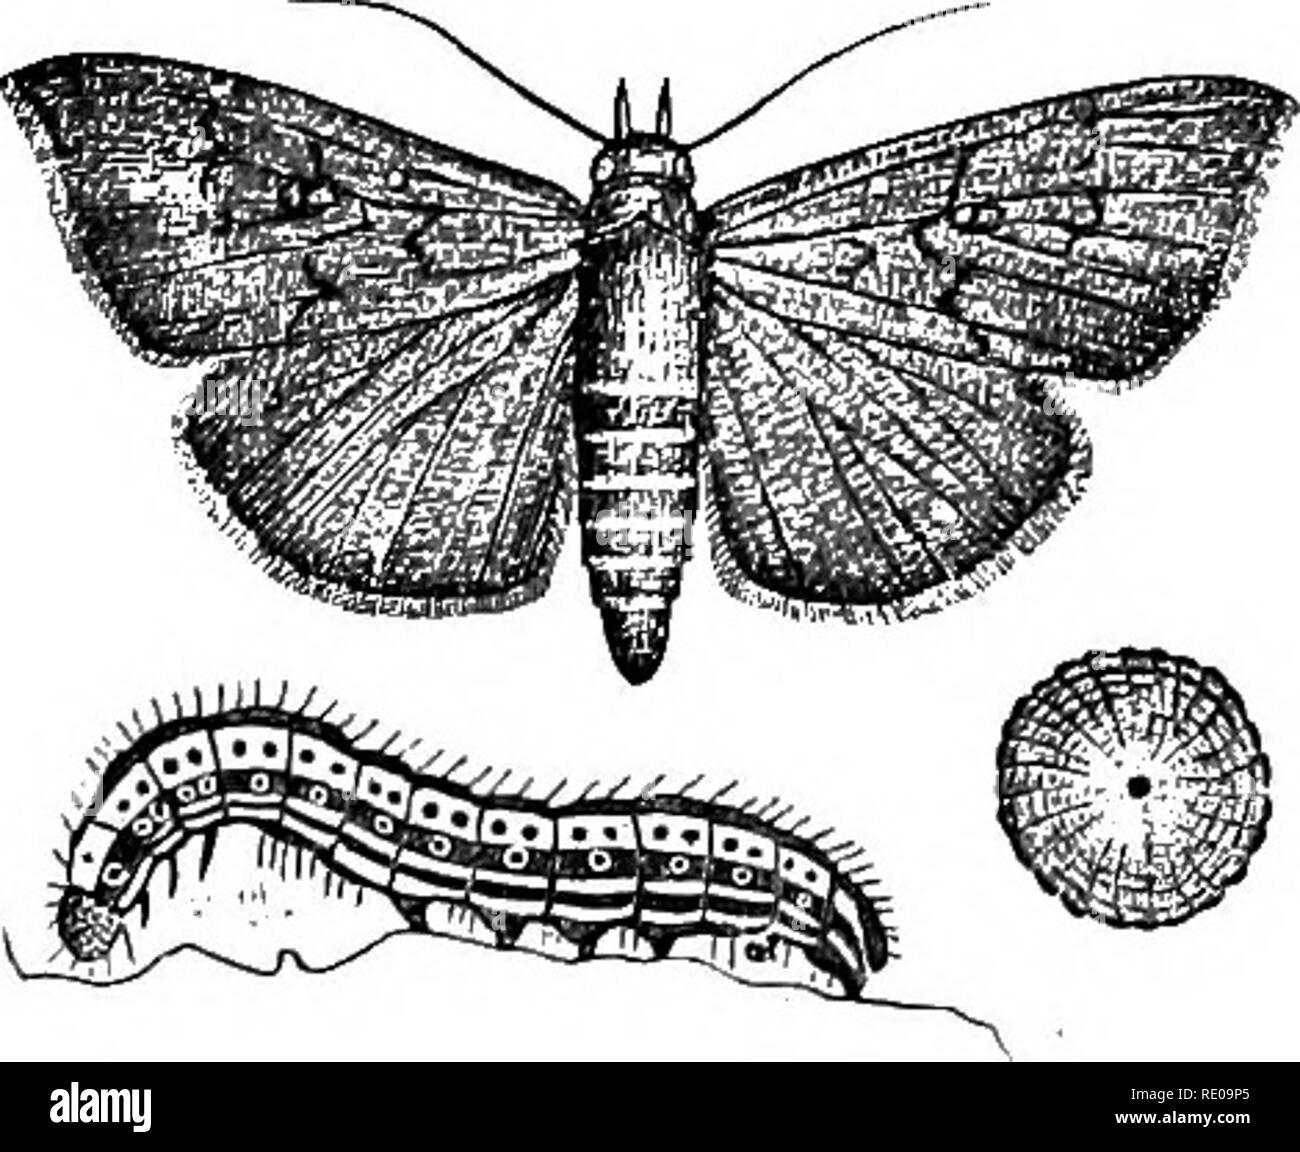 . Zoologia per licei e collegi. Zoologia. Il cotone-WORM. 359. Fig. 353.-uovo, Caterpillar e la tignola del Aletla argulacea, l'esercito di cotone- worm. Il più grande le tarme sono rappresentati dalla batteriosi vascolare-worm, l'esercito di erba-worm (Fig. 351), e l'esercito di cotone-worm (Fig. 353), in modo distruttivo per la vegetazione ; la seta - worm moth {Bomhyx mori Linn.), del vecchio mondo e la seta americano-worm (Telea Polifemo Linn.). Alcune specie di seta - famiglia di worm, chiamato cesto-worm {(Eceticus), vive nei casi con- structed di brevi o lunghe strisce (Fig. 353. La nostra specie native è Thyridopteryx.epheme Foto Stock